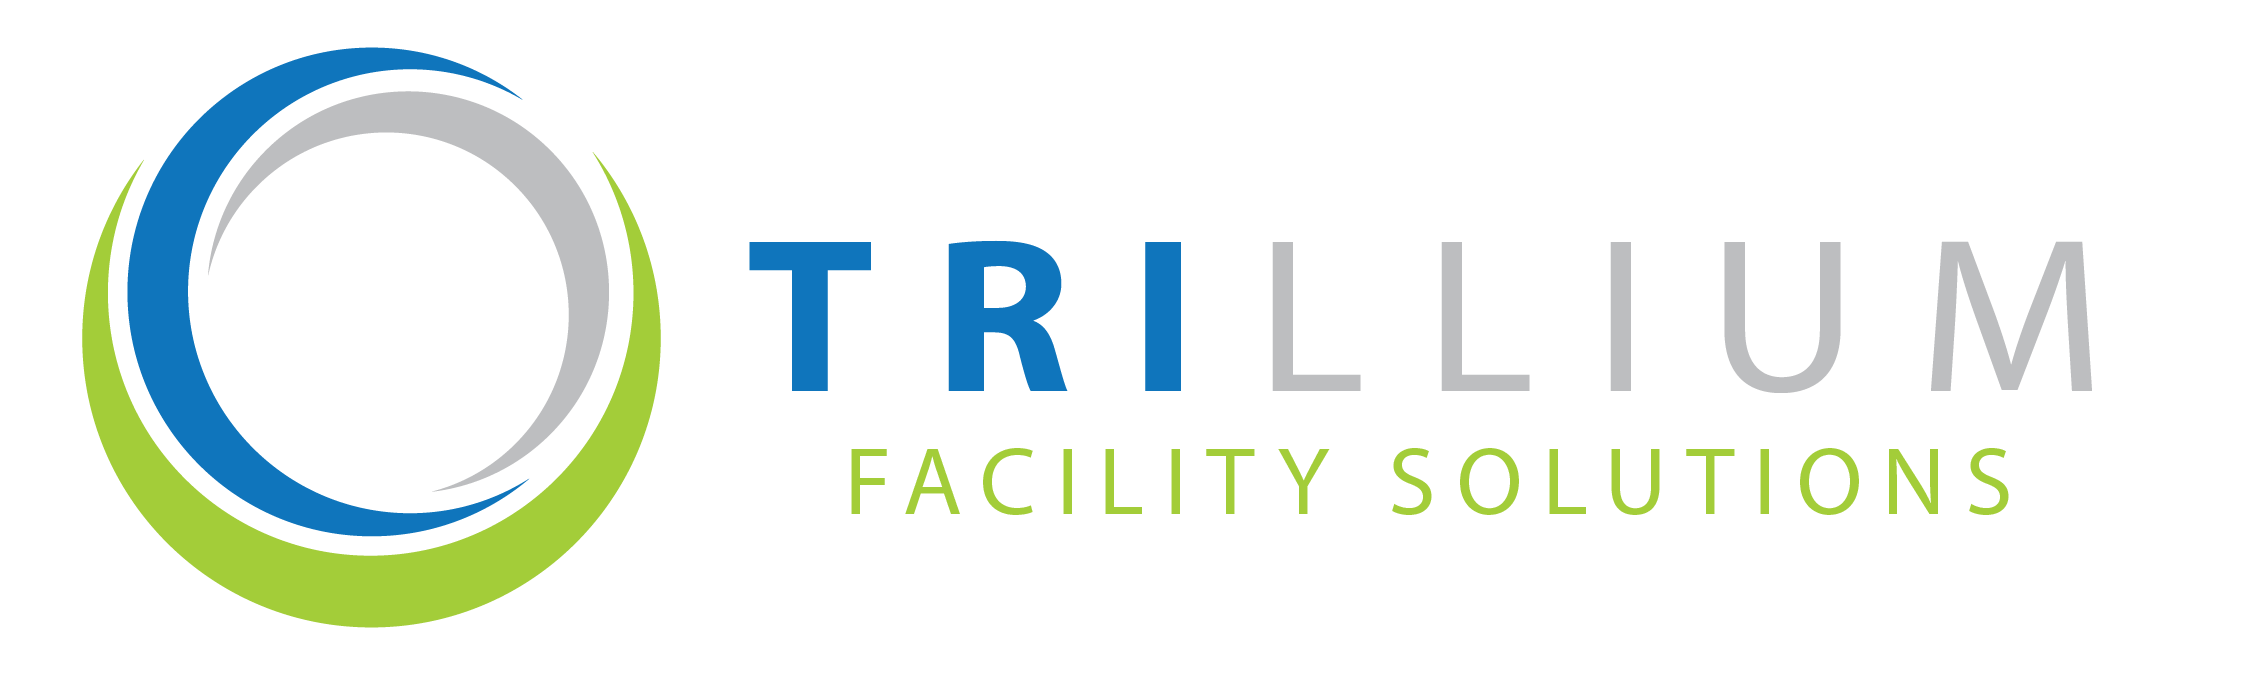 Trillium Facility